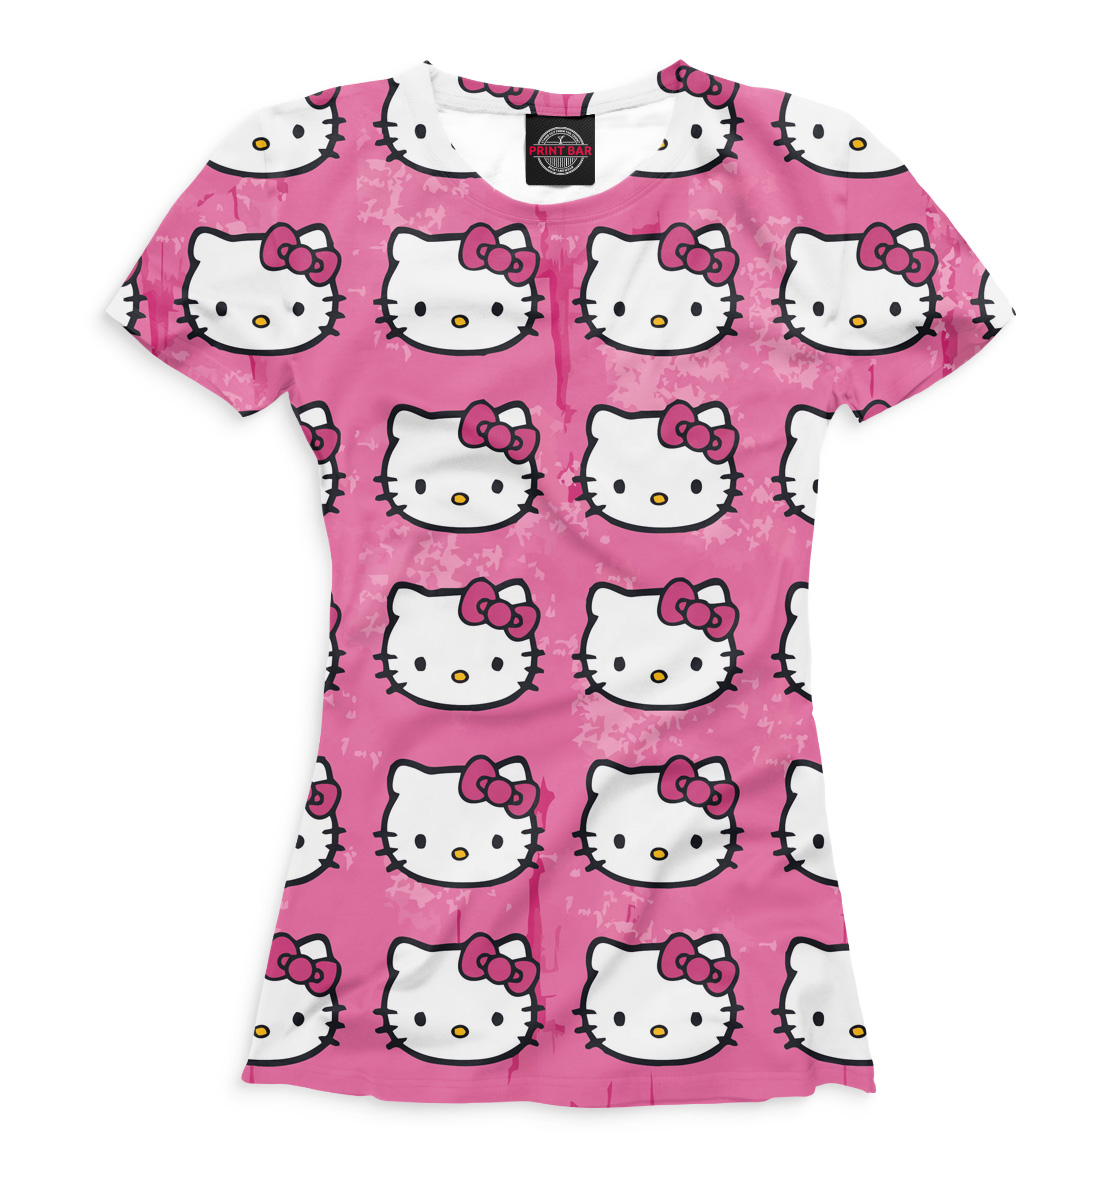 Хэллоу одежда. T-Shirt Хеллоу Китти. Футболка Хелло Китти детская. Детское платье Хелло Китти. Hello Kitty одежда.